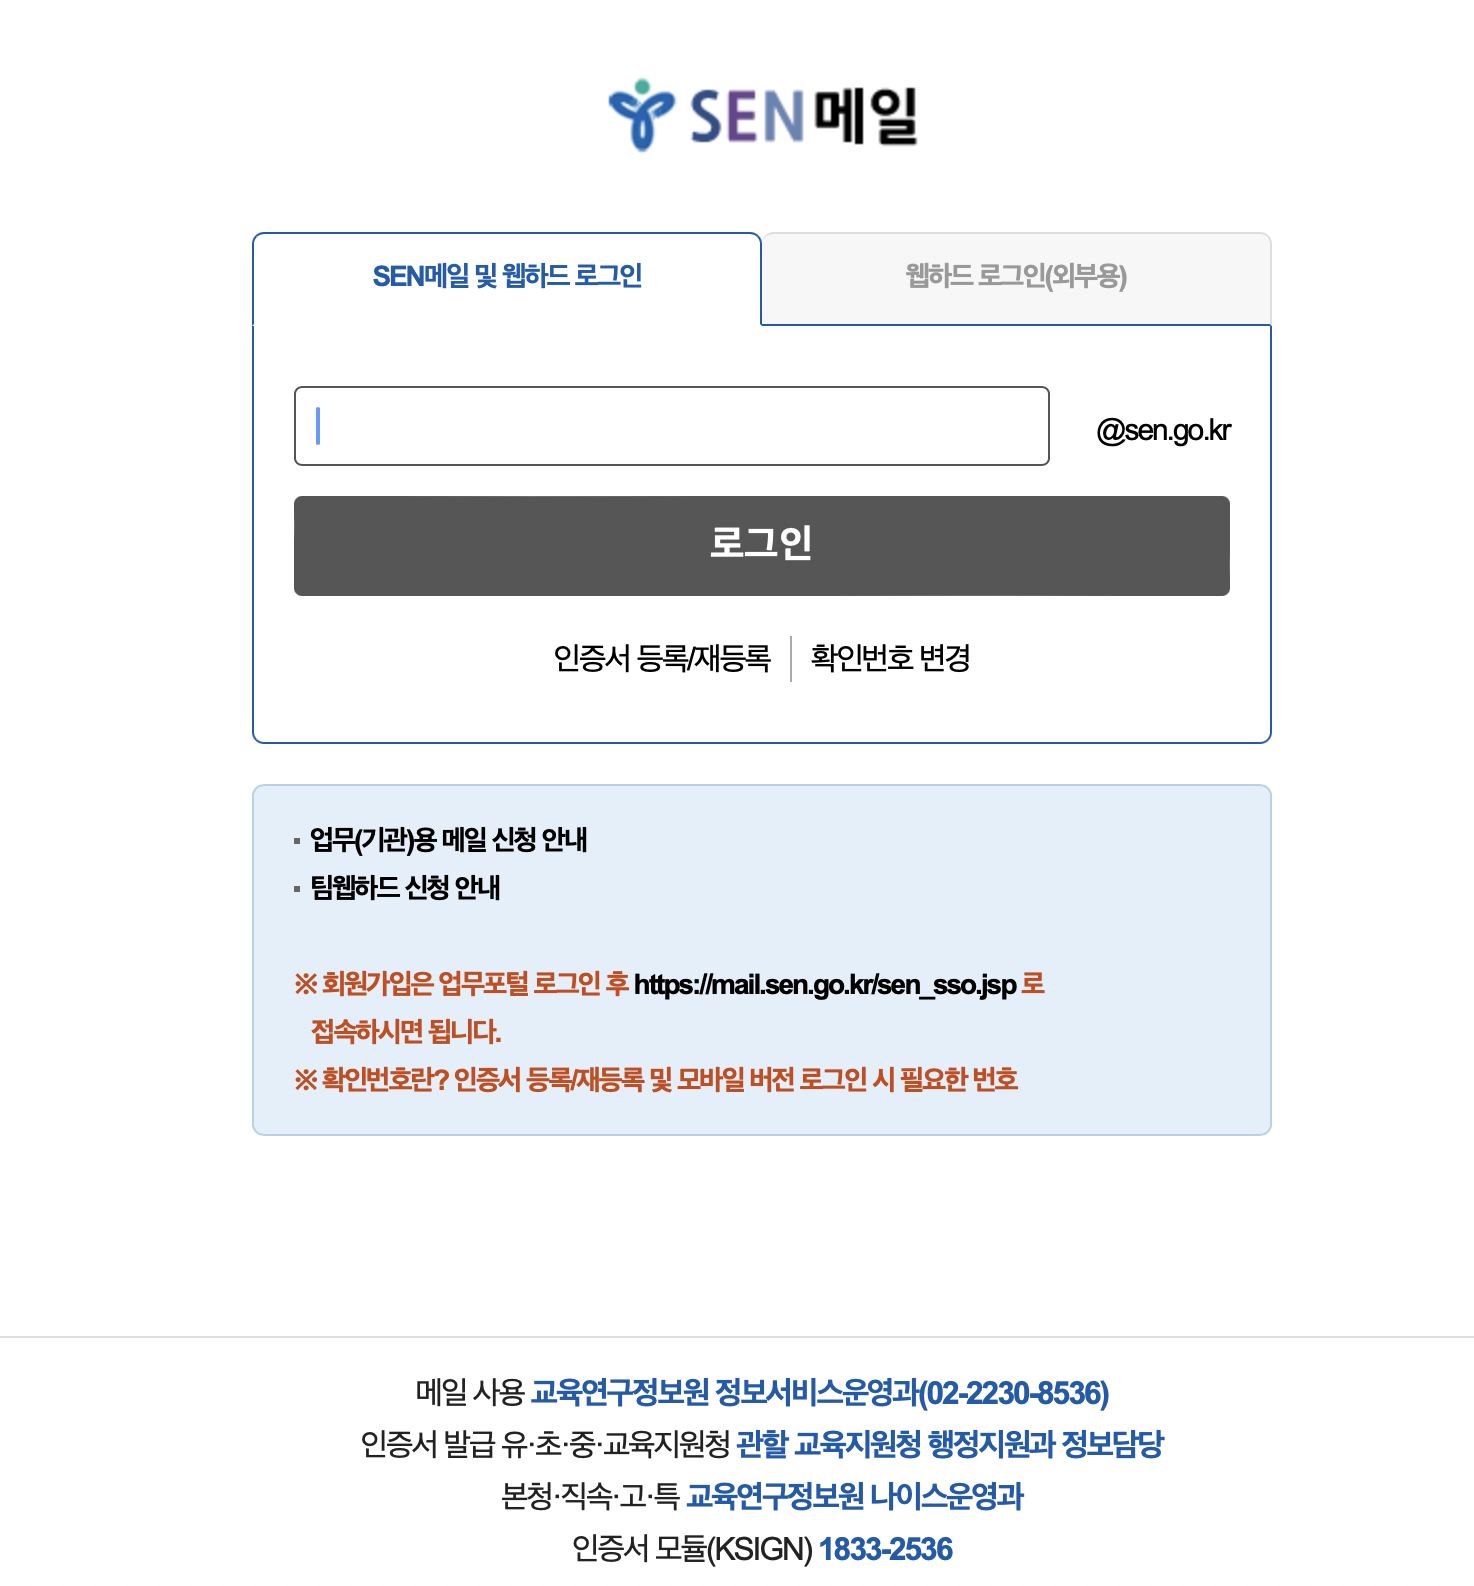 서울교육청 웹메일 SEN메일 (https://mail.sen.go.kr)